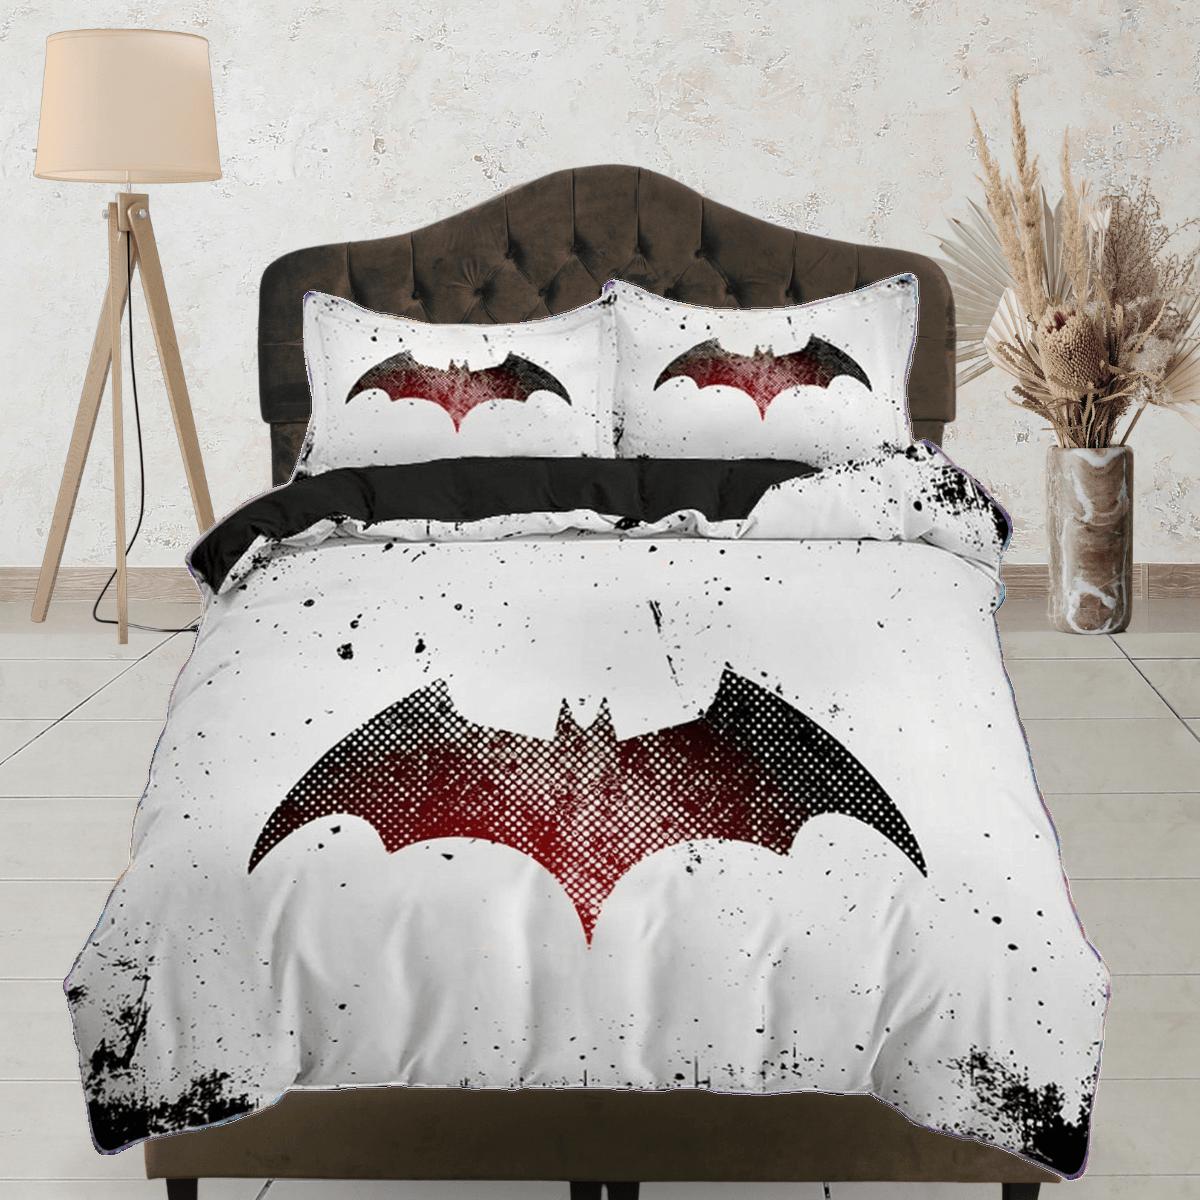 daintyduvet Bat silhouette halloween bedding & pillowcase, black and white duvet cover set dorm bedding, halloween decor, nursery toddler halloween gift